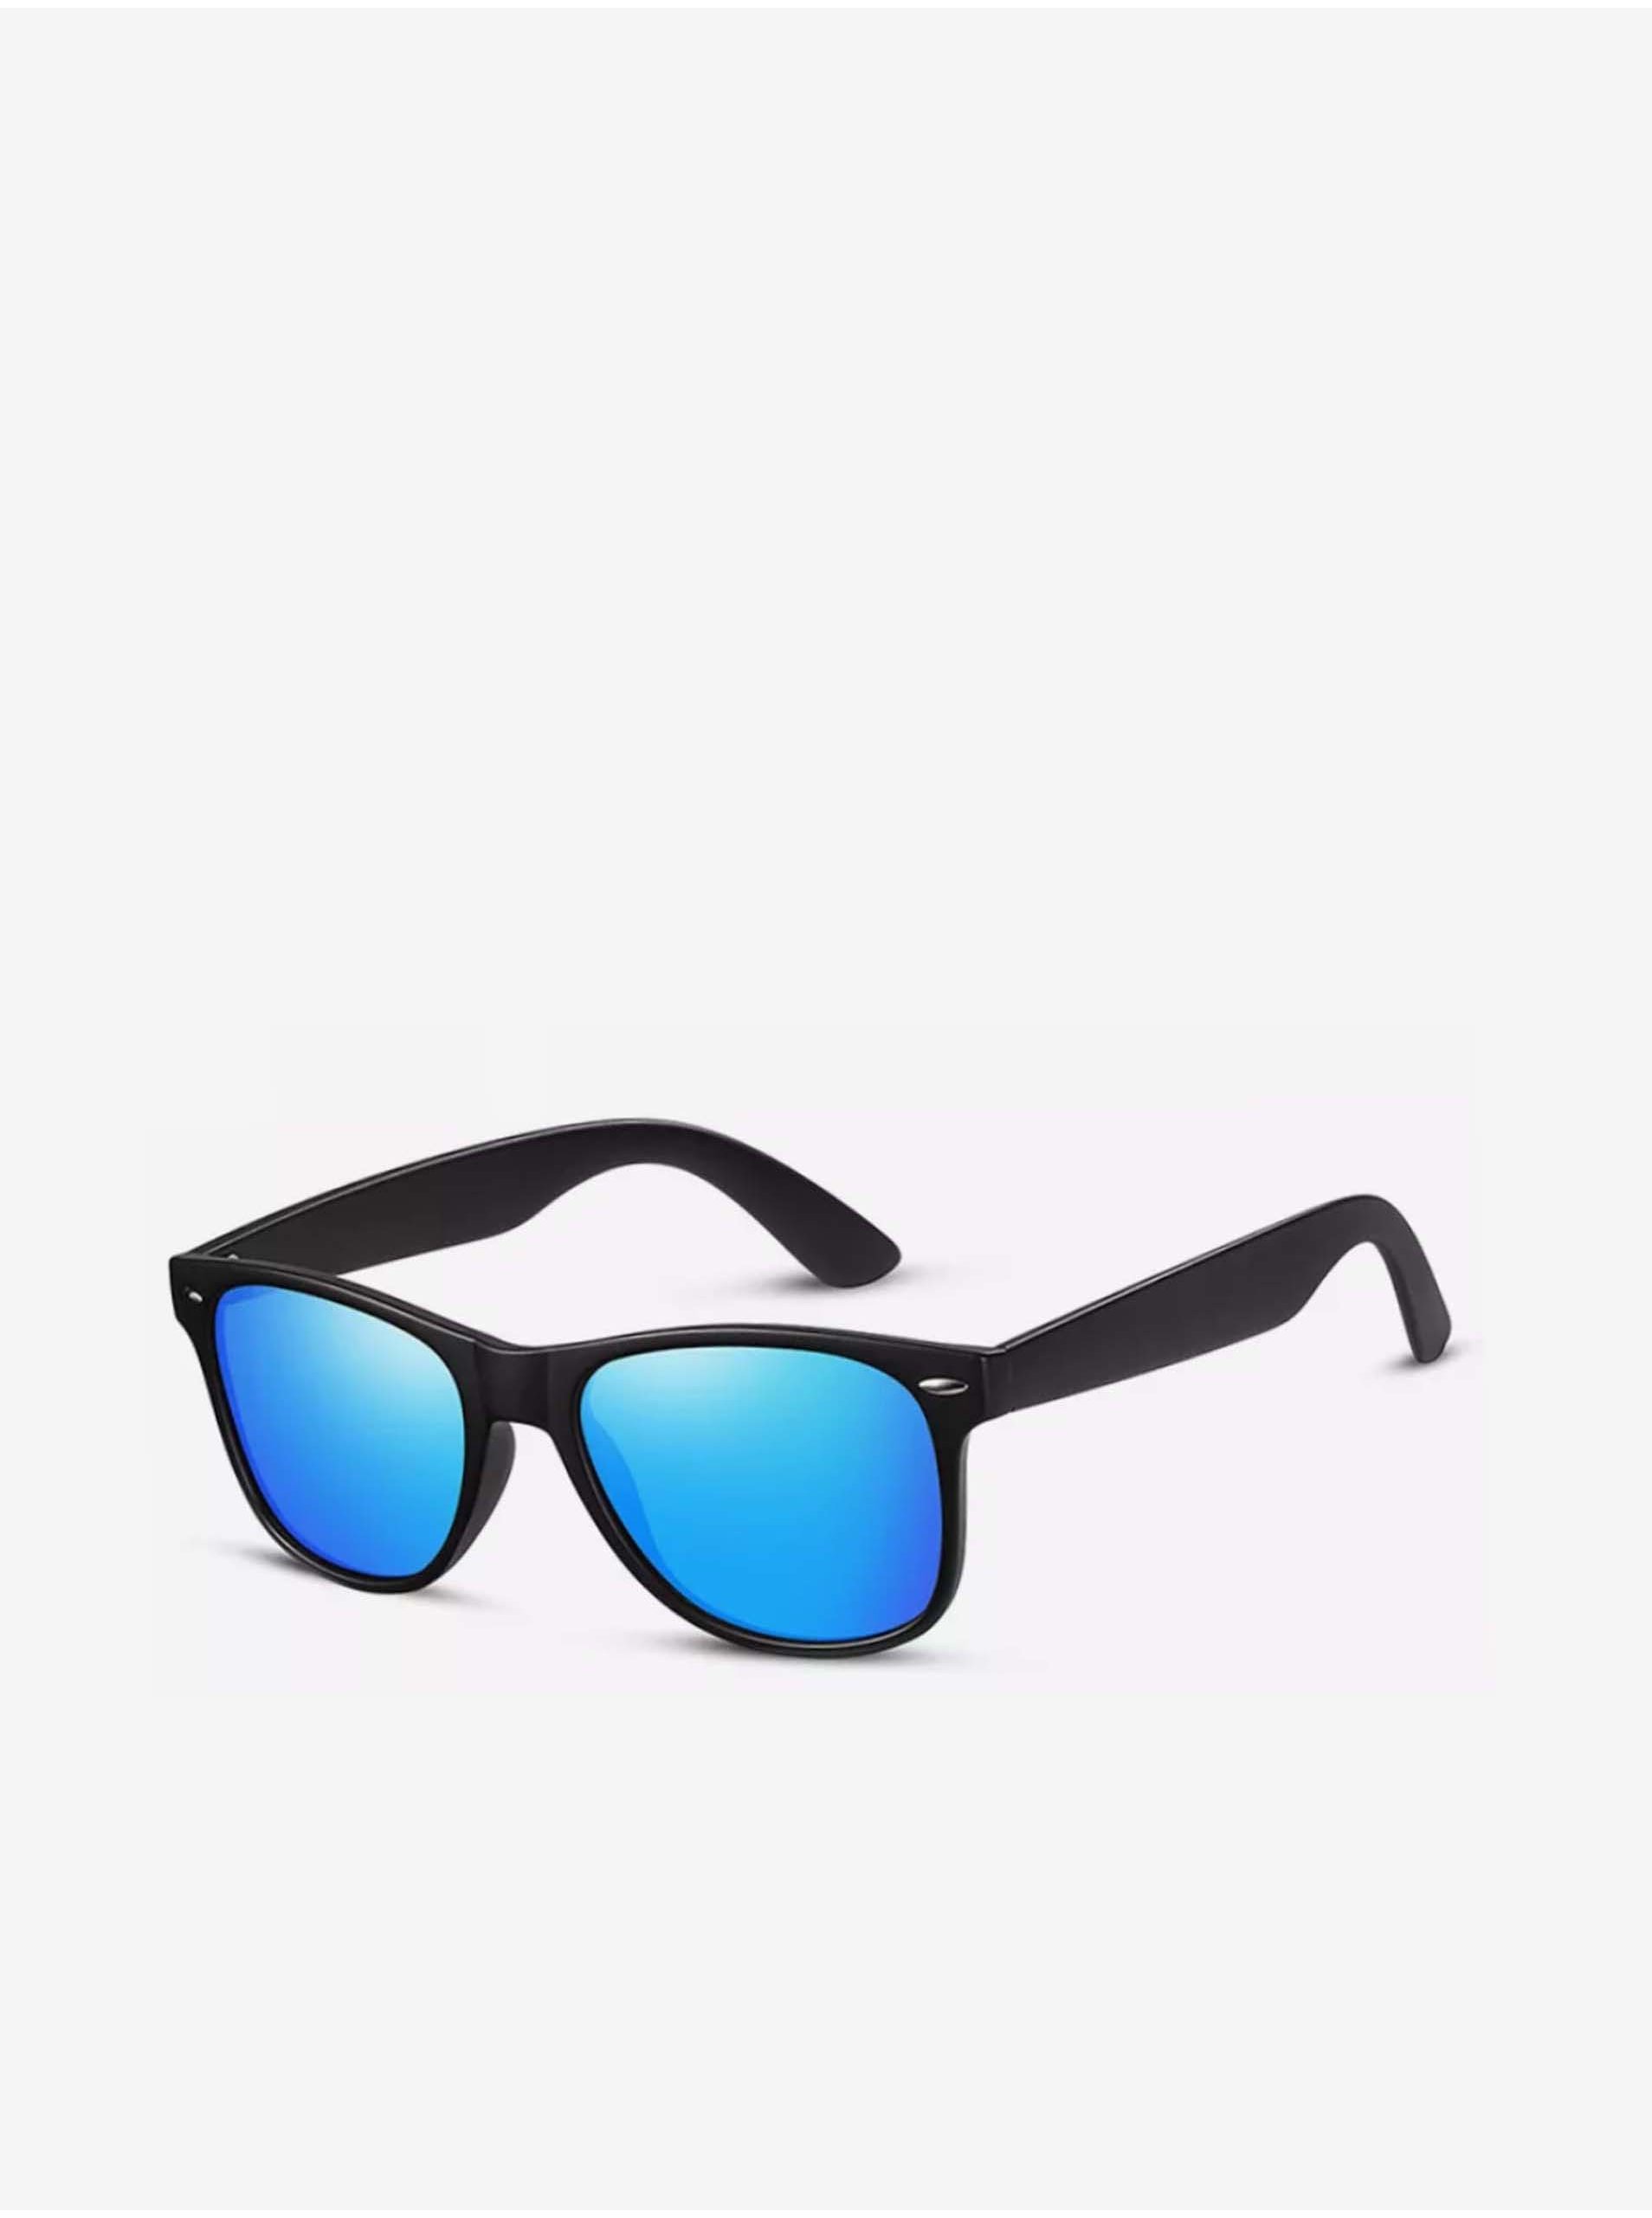 Lacno VeyRey Slnečné okuliare polarizačné Nerd modré sklá –